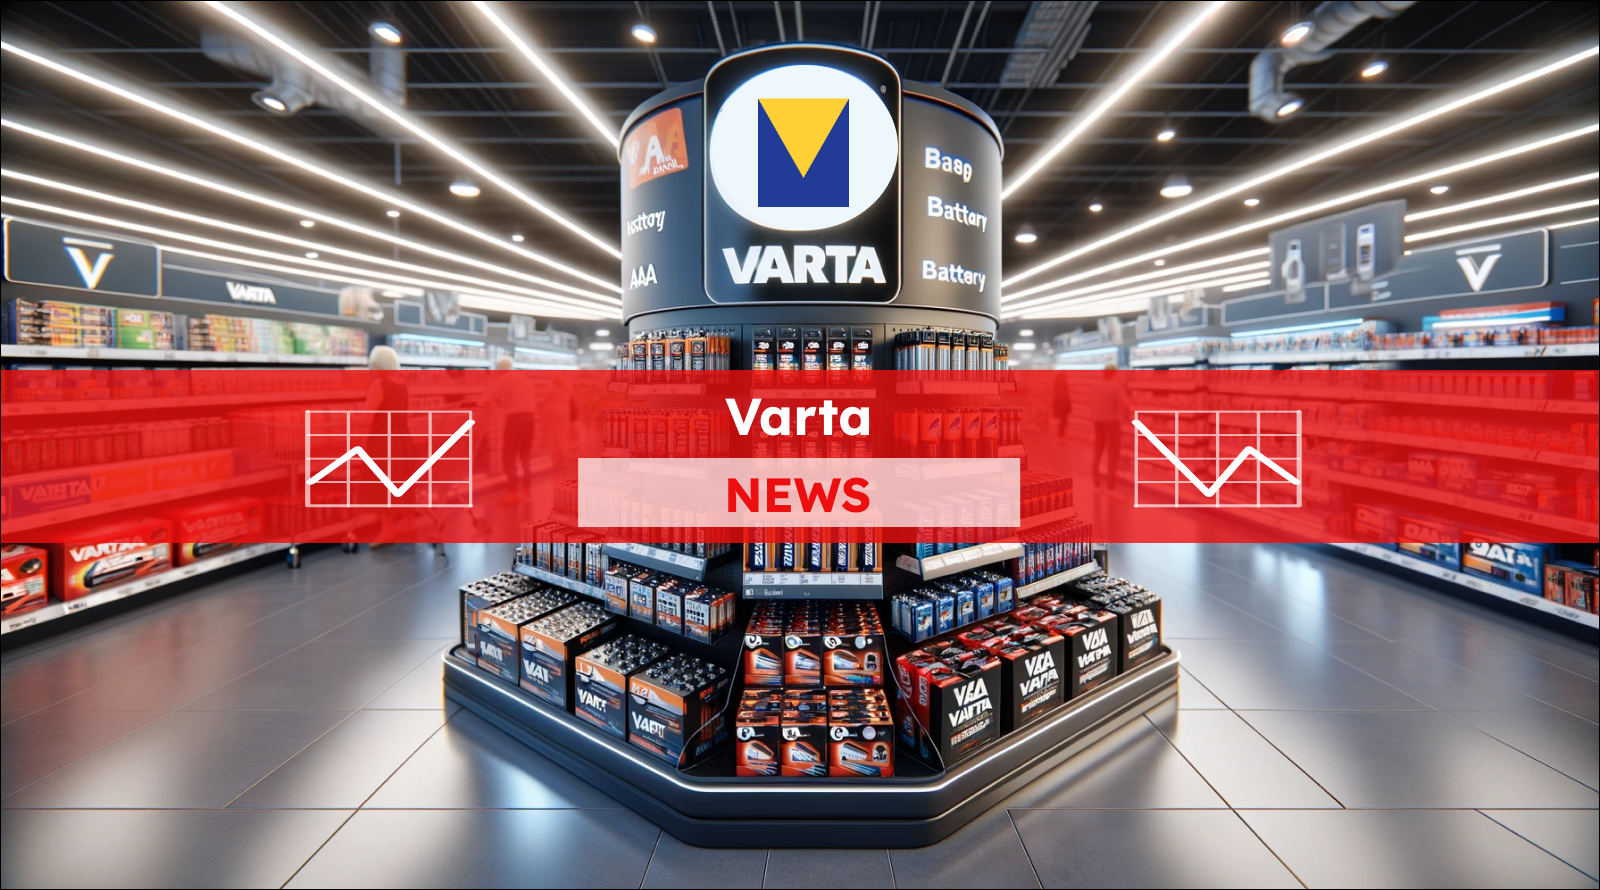 ein großes Verkaufsregal im Mittelpunkt eines Einzelhandelsgeschäfts, gefüllt mit einer breiten Palette von Varta-Batterieprodukten, mit einem Varta NEWS Banner.